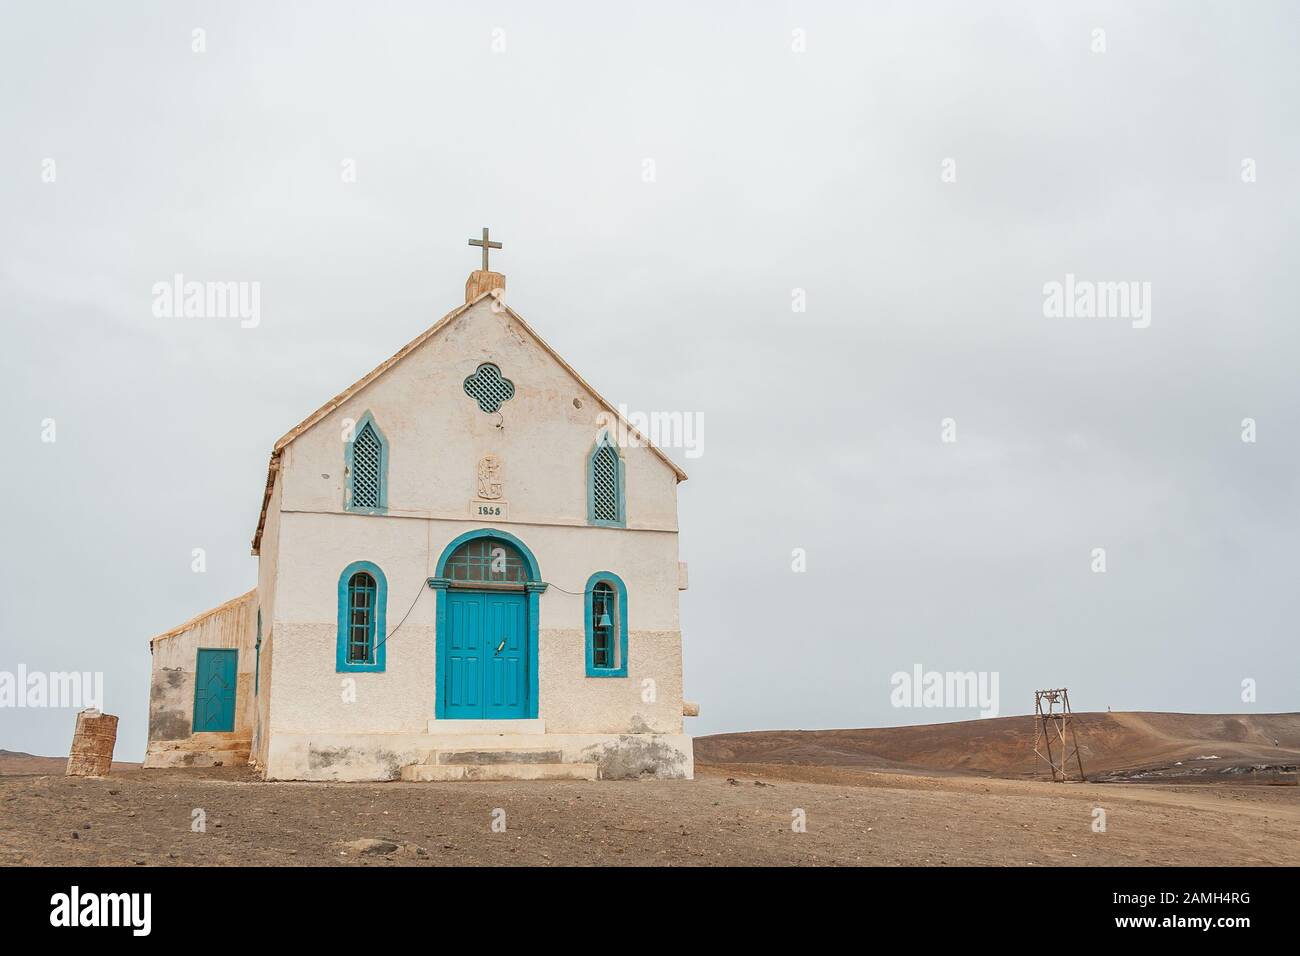 Lady of Compassion Kirche erbaut im Jahr 1853, die älteste Kirche von Sal Island, Pedra de Lume, Kapverdische Inseln, Afrika. Stockfoto